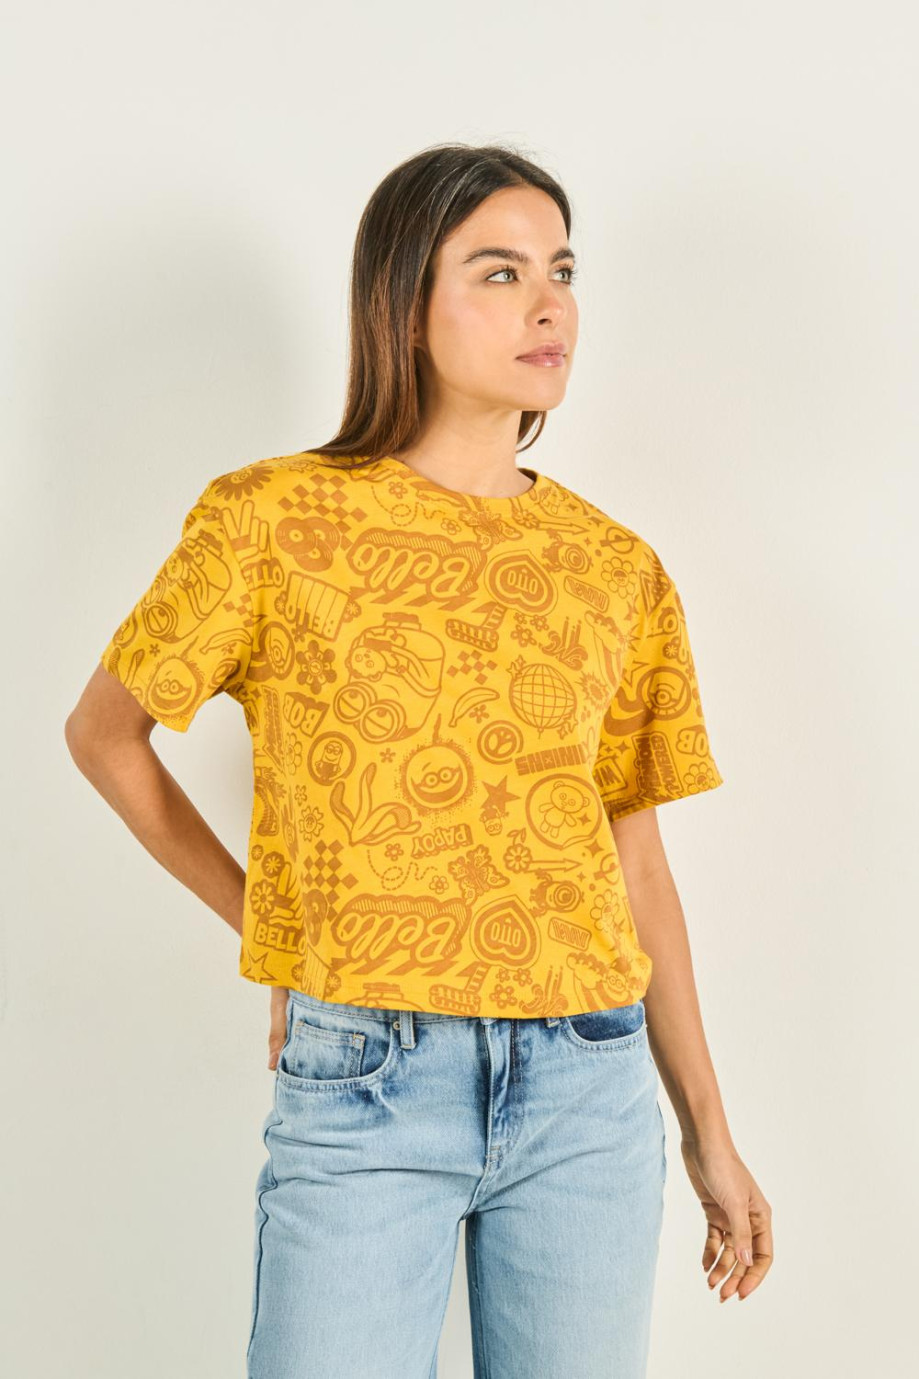 Camiseta crop top amarilla clara con diseños de Minions